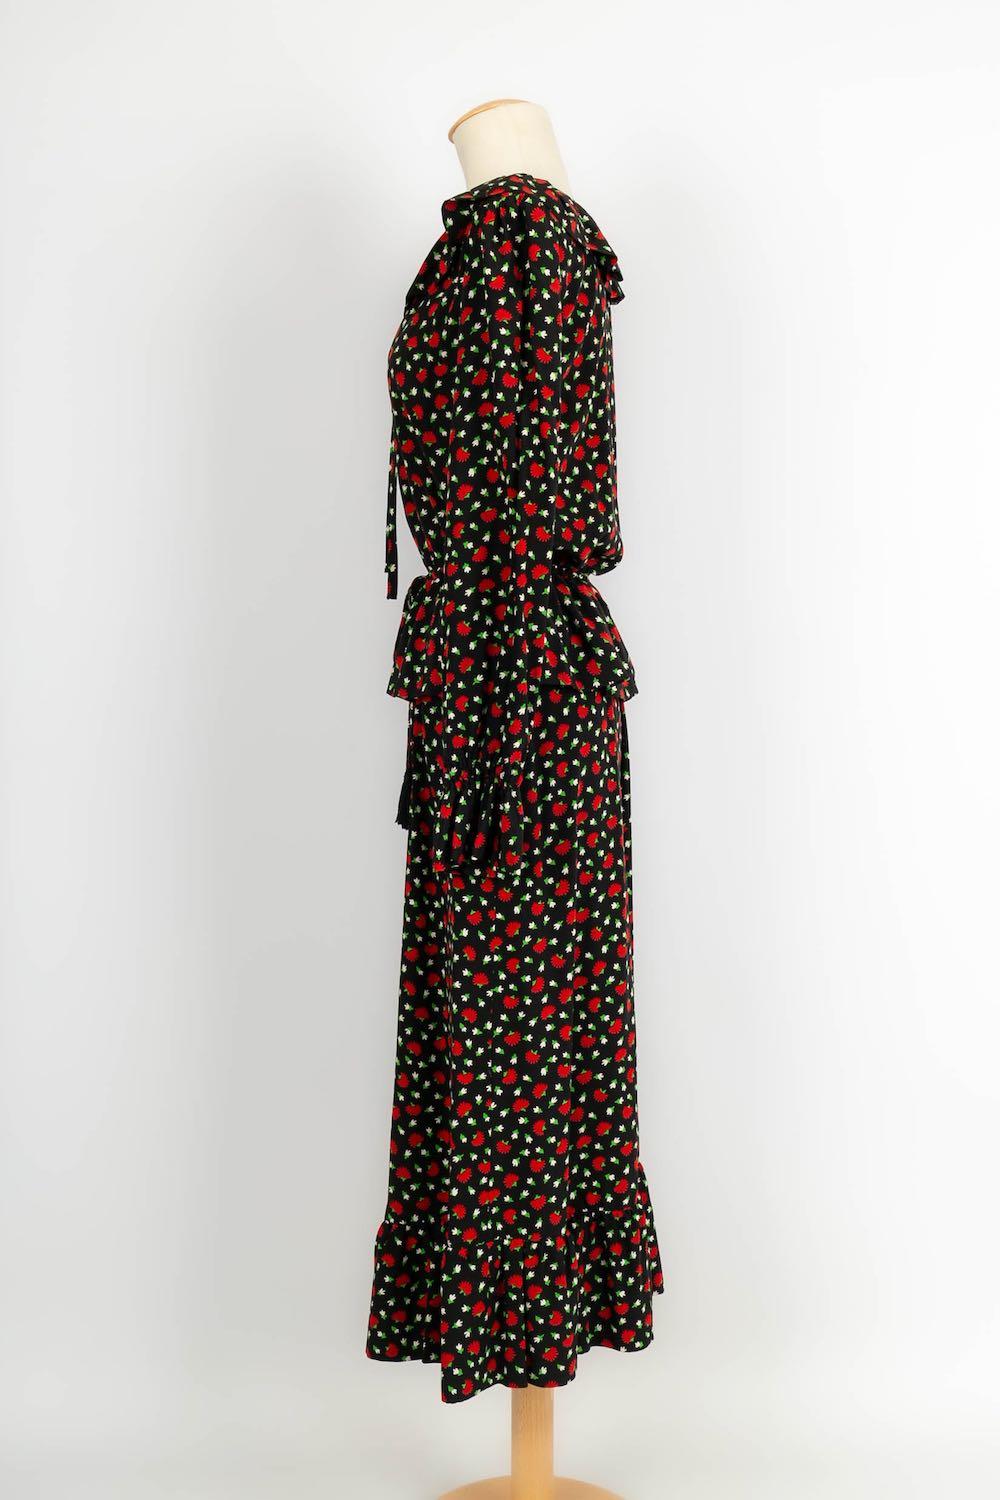 Yves Saint Laurent -(Made in France) Ensemble Haute Couture composé d'un chemisier et d'une jupe en soie noire imprimée de fleurs rouges. Pas de Label ou de composition de taille, il convient à un 36FR/38FR.

Informations complémentaires :